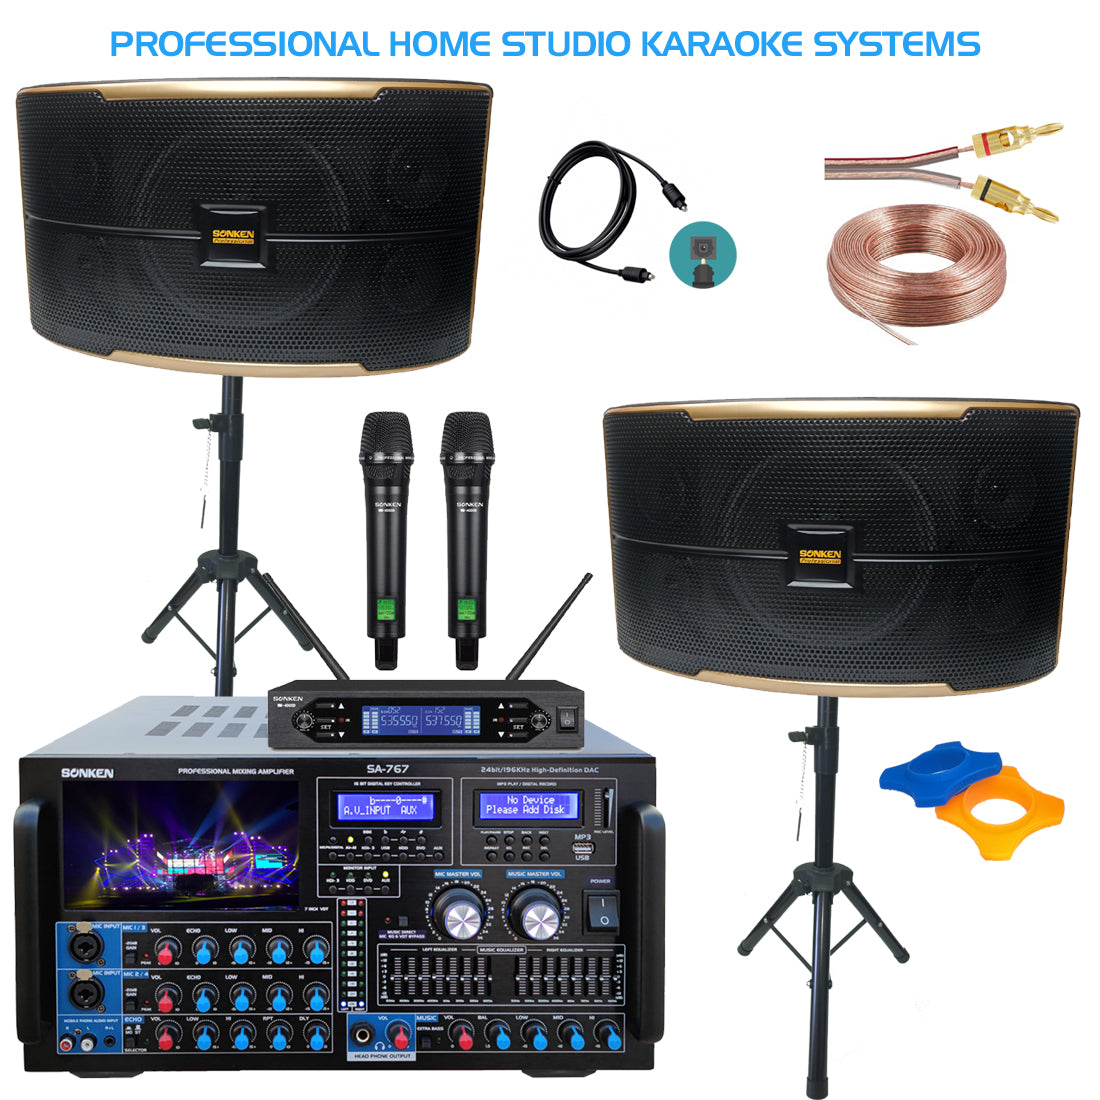 Sonken Karaoke Amplifier and Speaker Package Deals